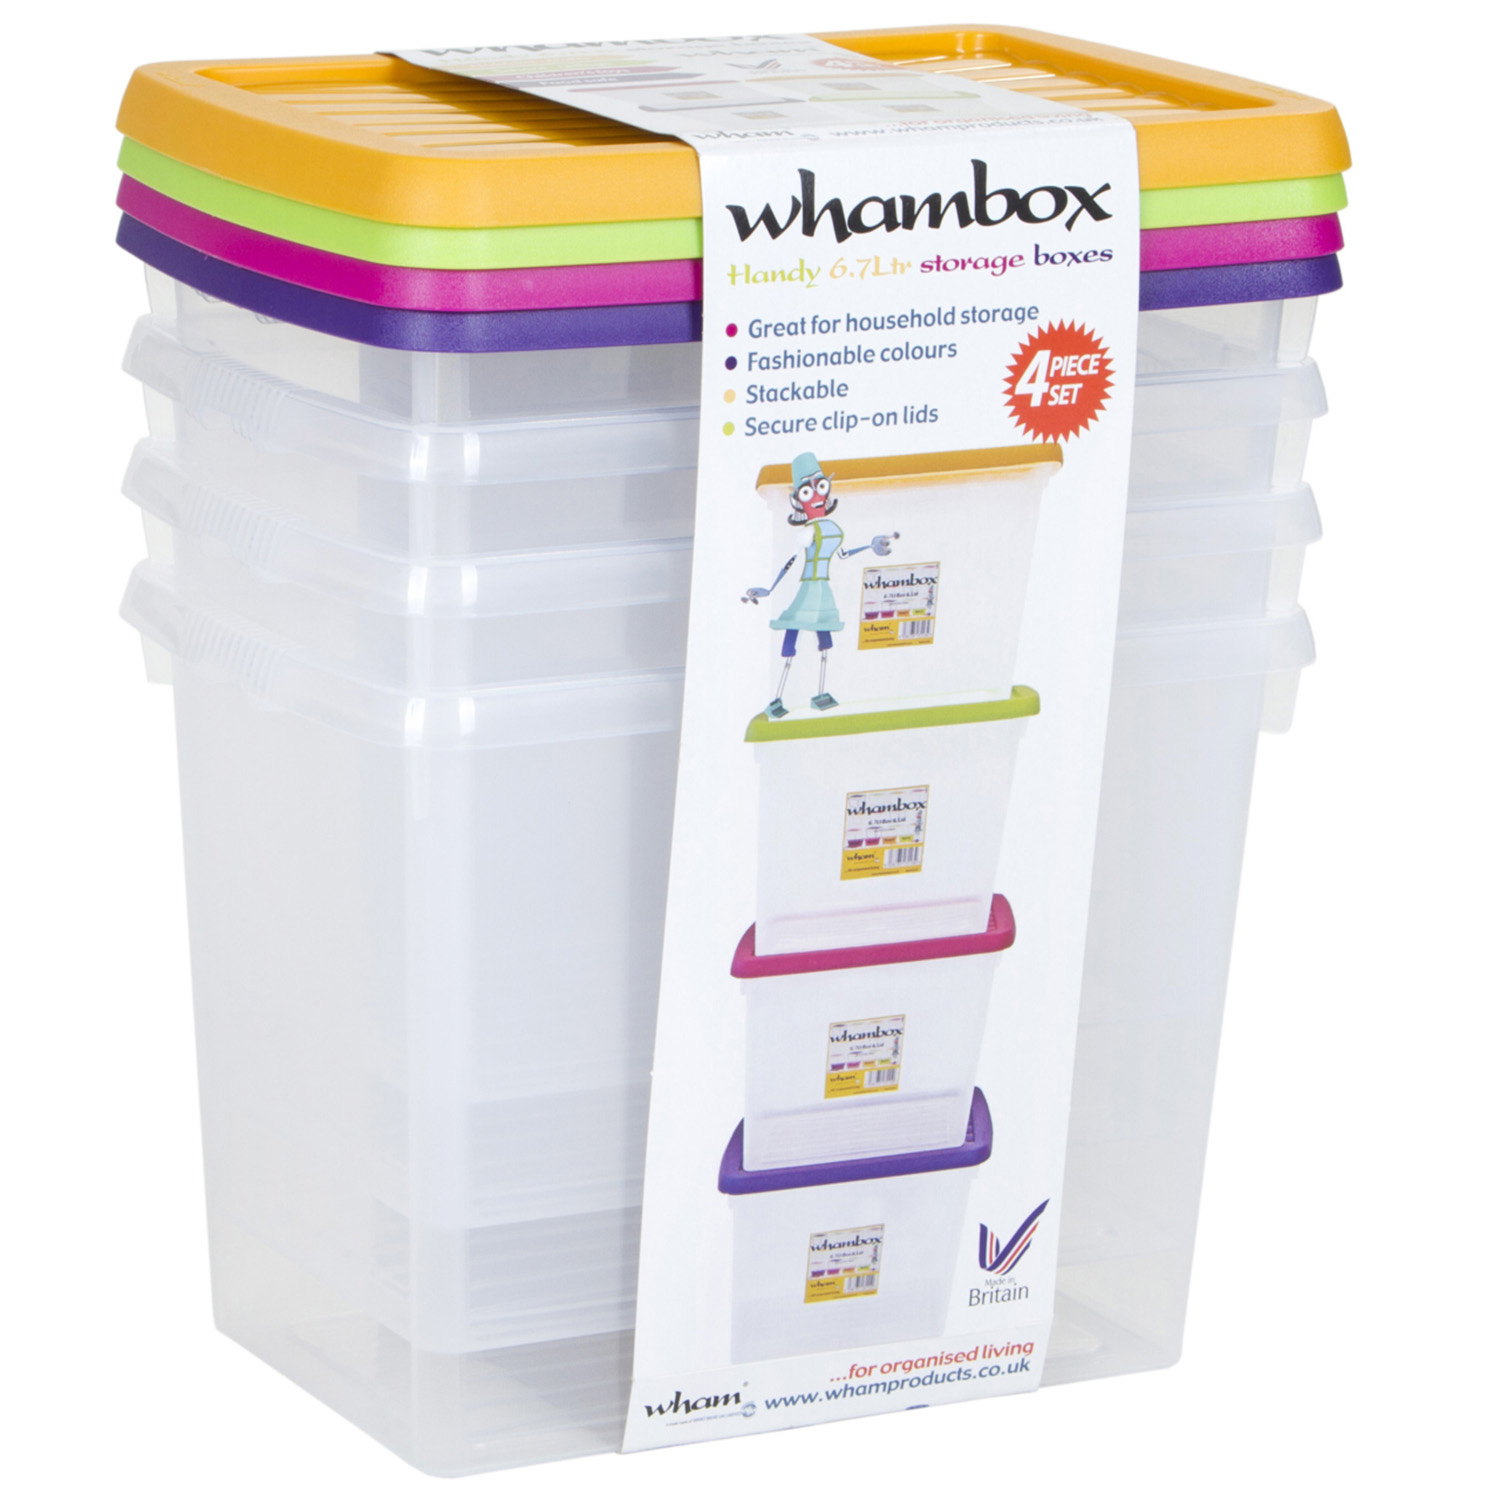 Wham 6.7L Whambox Storage Box 4 Pack Image